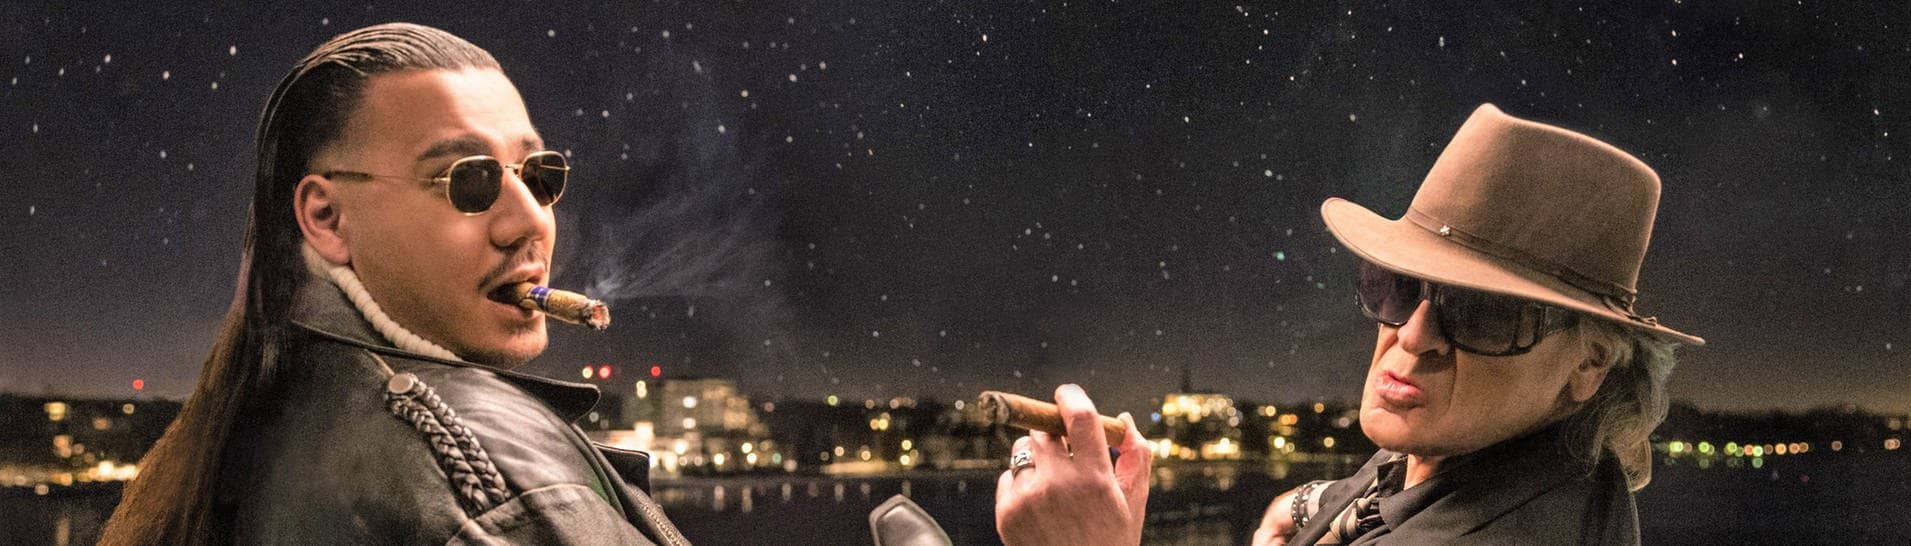 Sänger Udo Lindenberg und Apache 207 schauen Zigarre rauchend in den Nachthimmel, ihr Song „Komet“ ist der erfolgreichste Hit des Jahrtausends